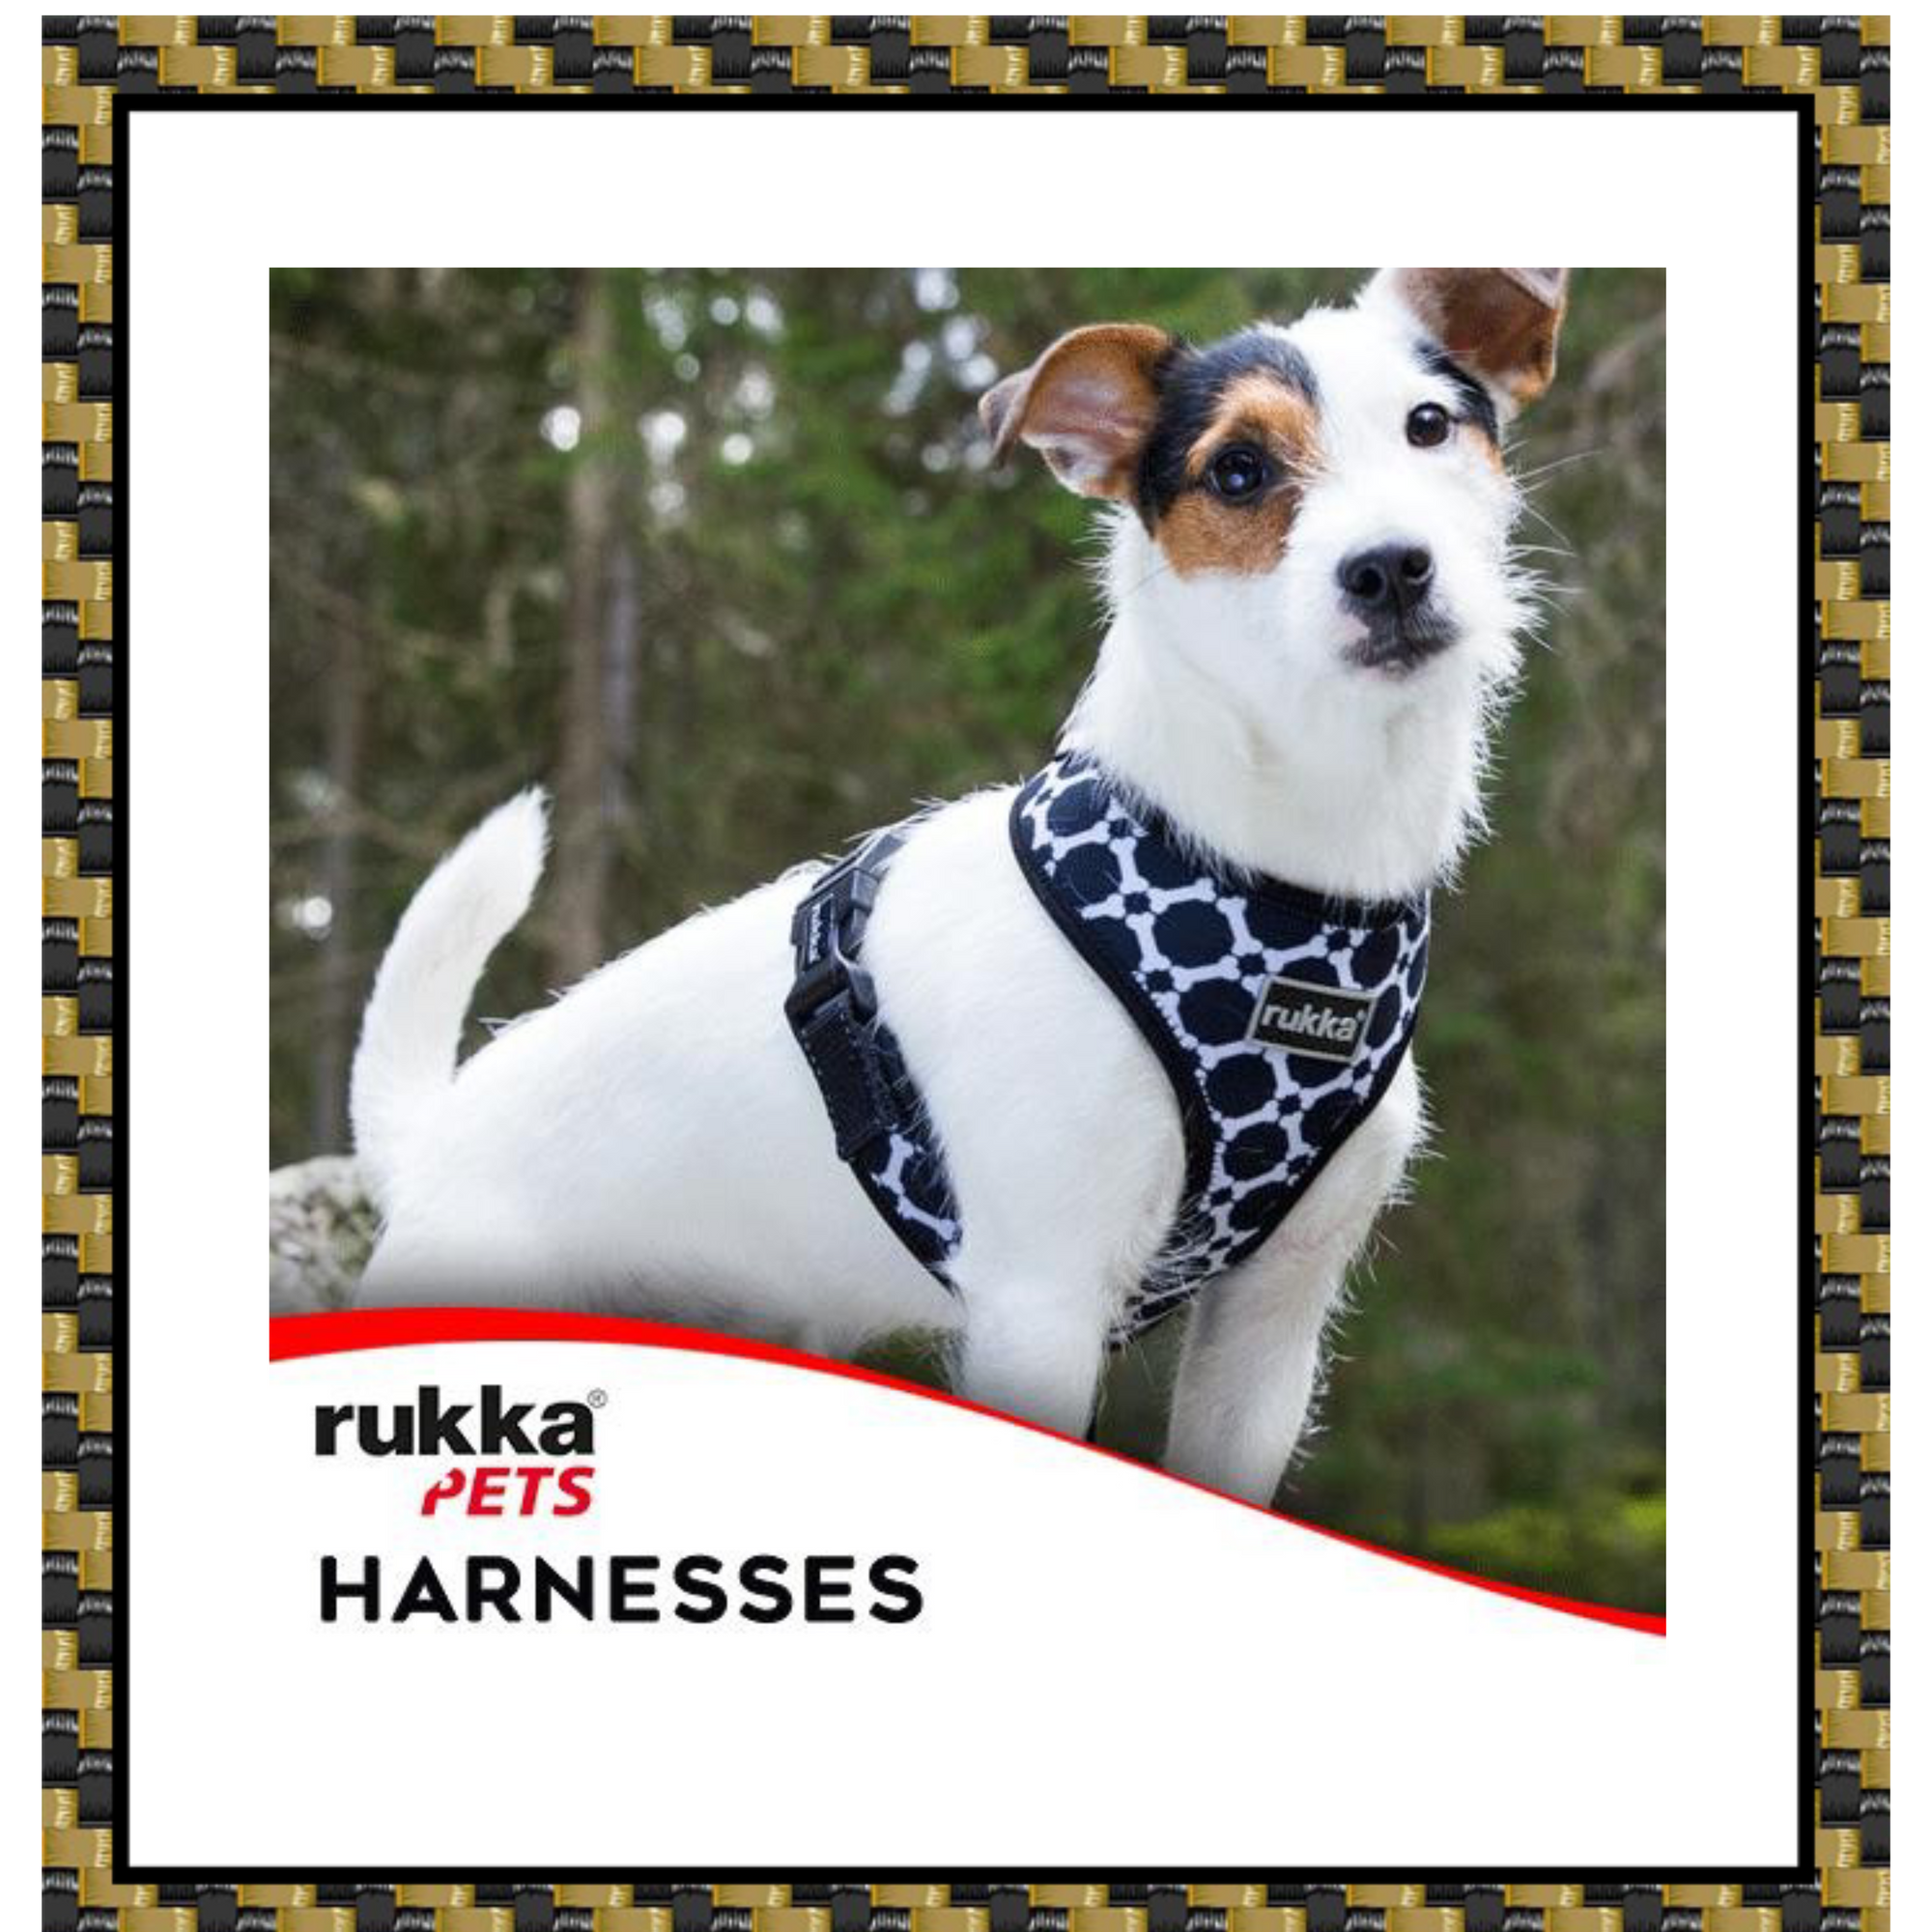 Rukka Pets Harnesses